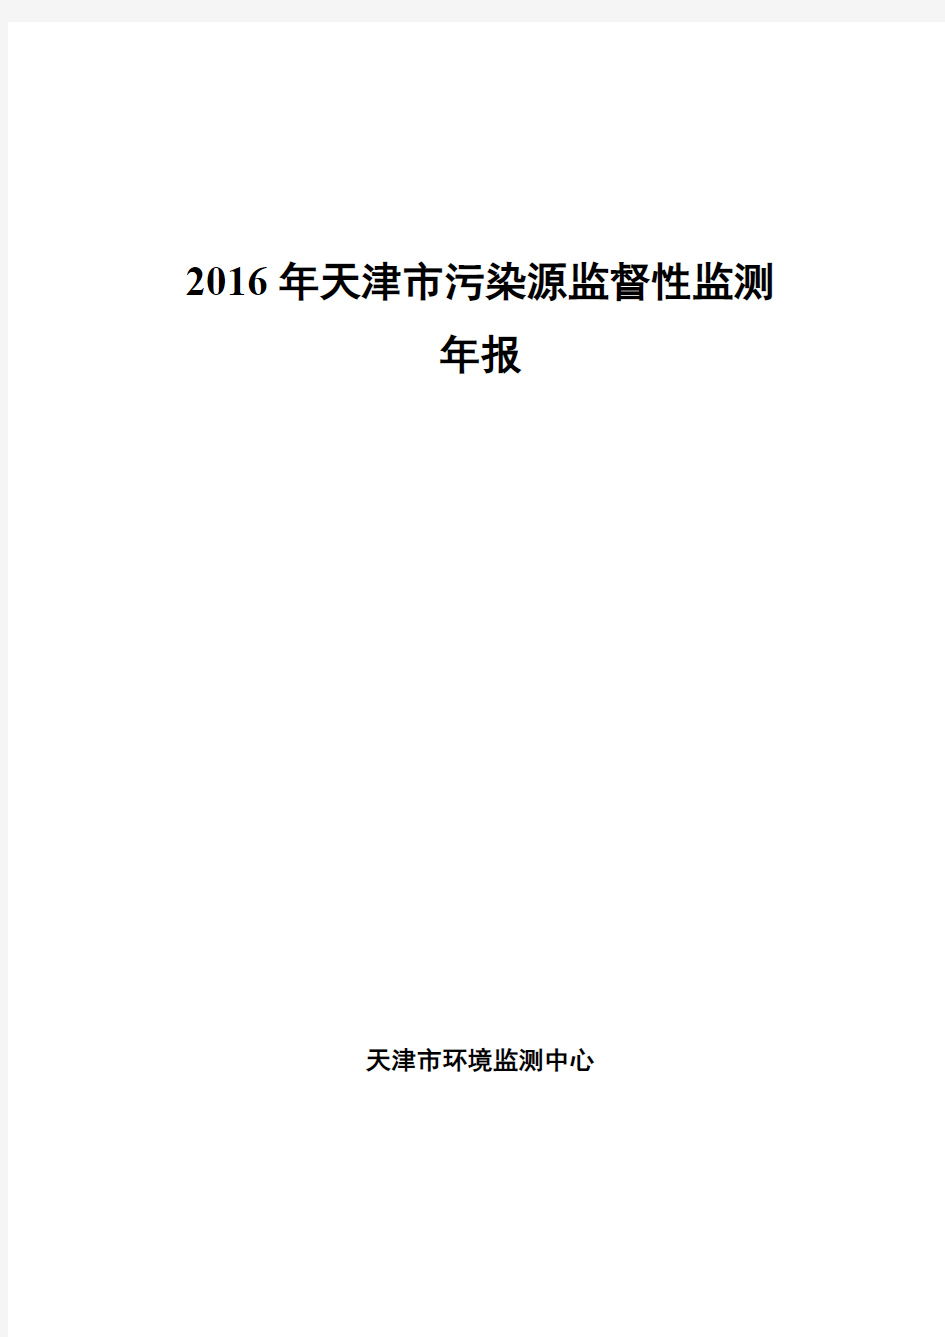 2016年天津污染源监督性监测